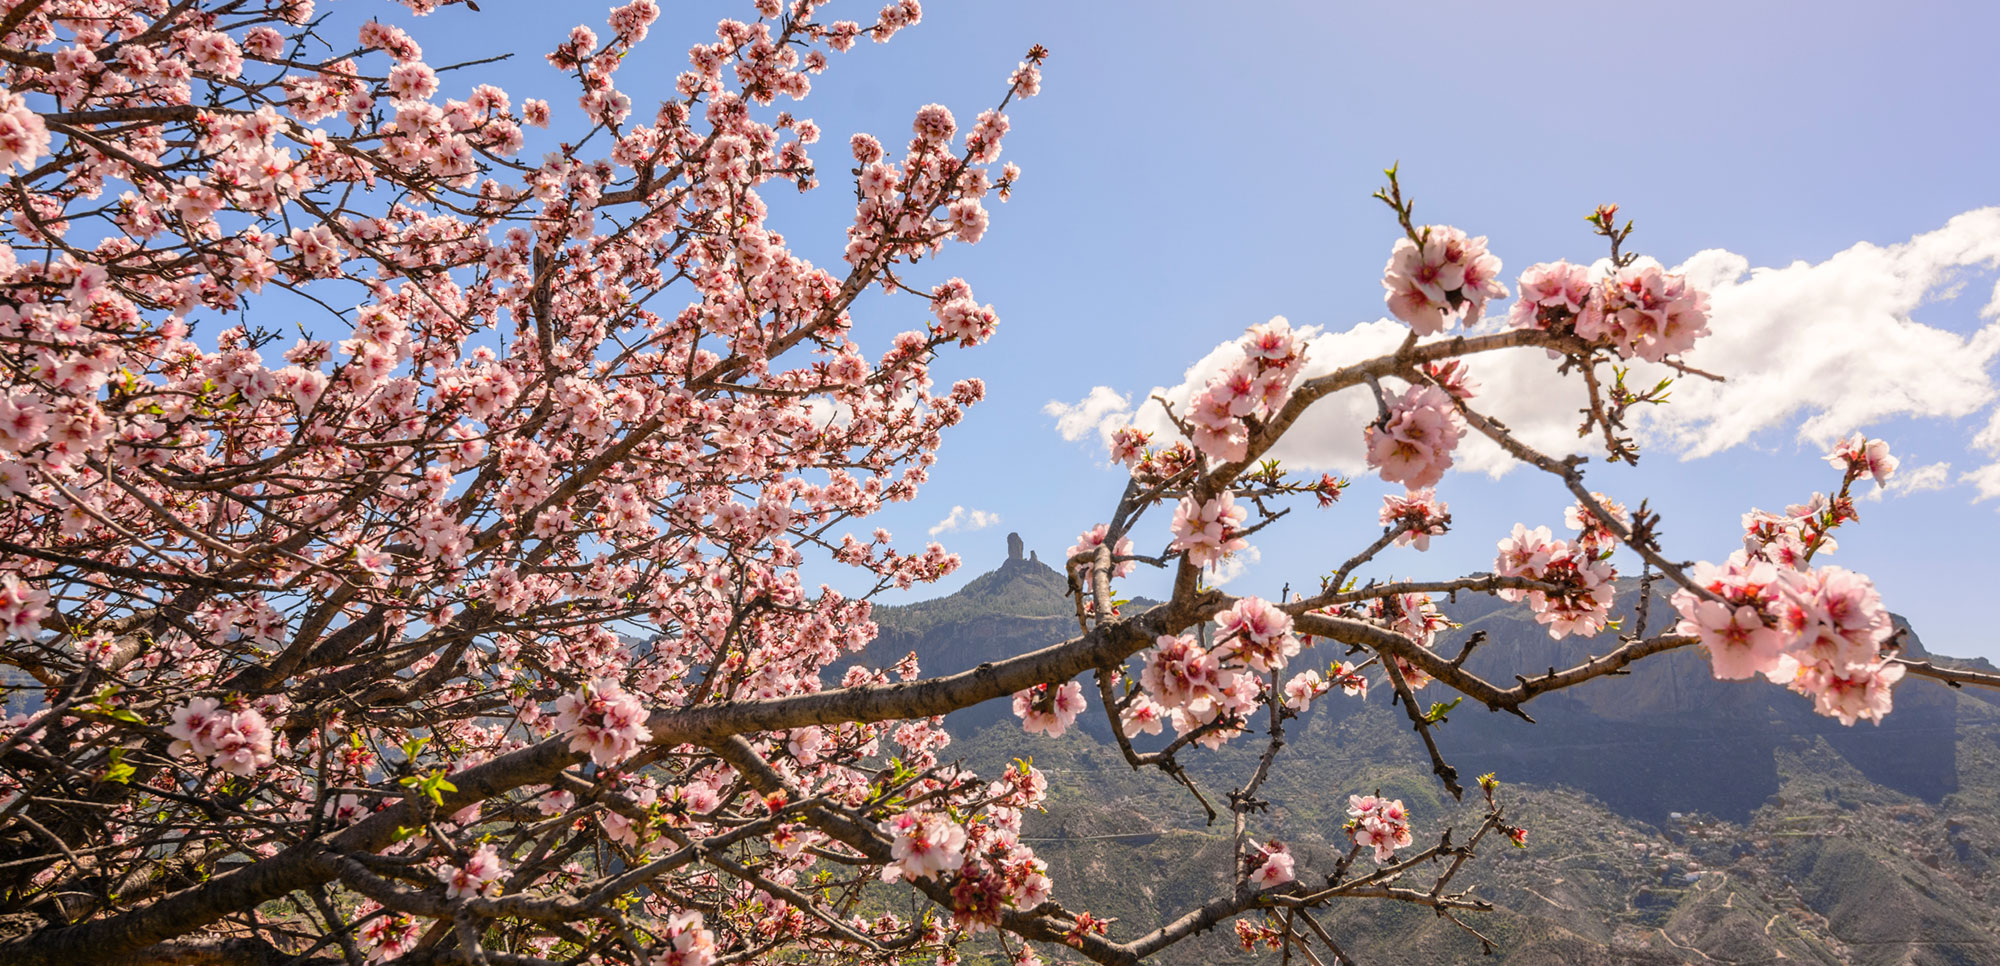 Tiempo de almendros en flor en Canarias: recuerdos y sabores - Viajar es  vivir